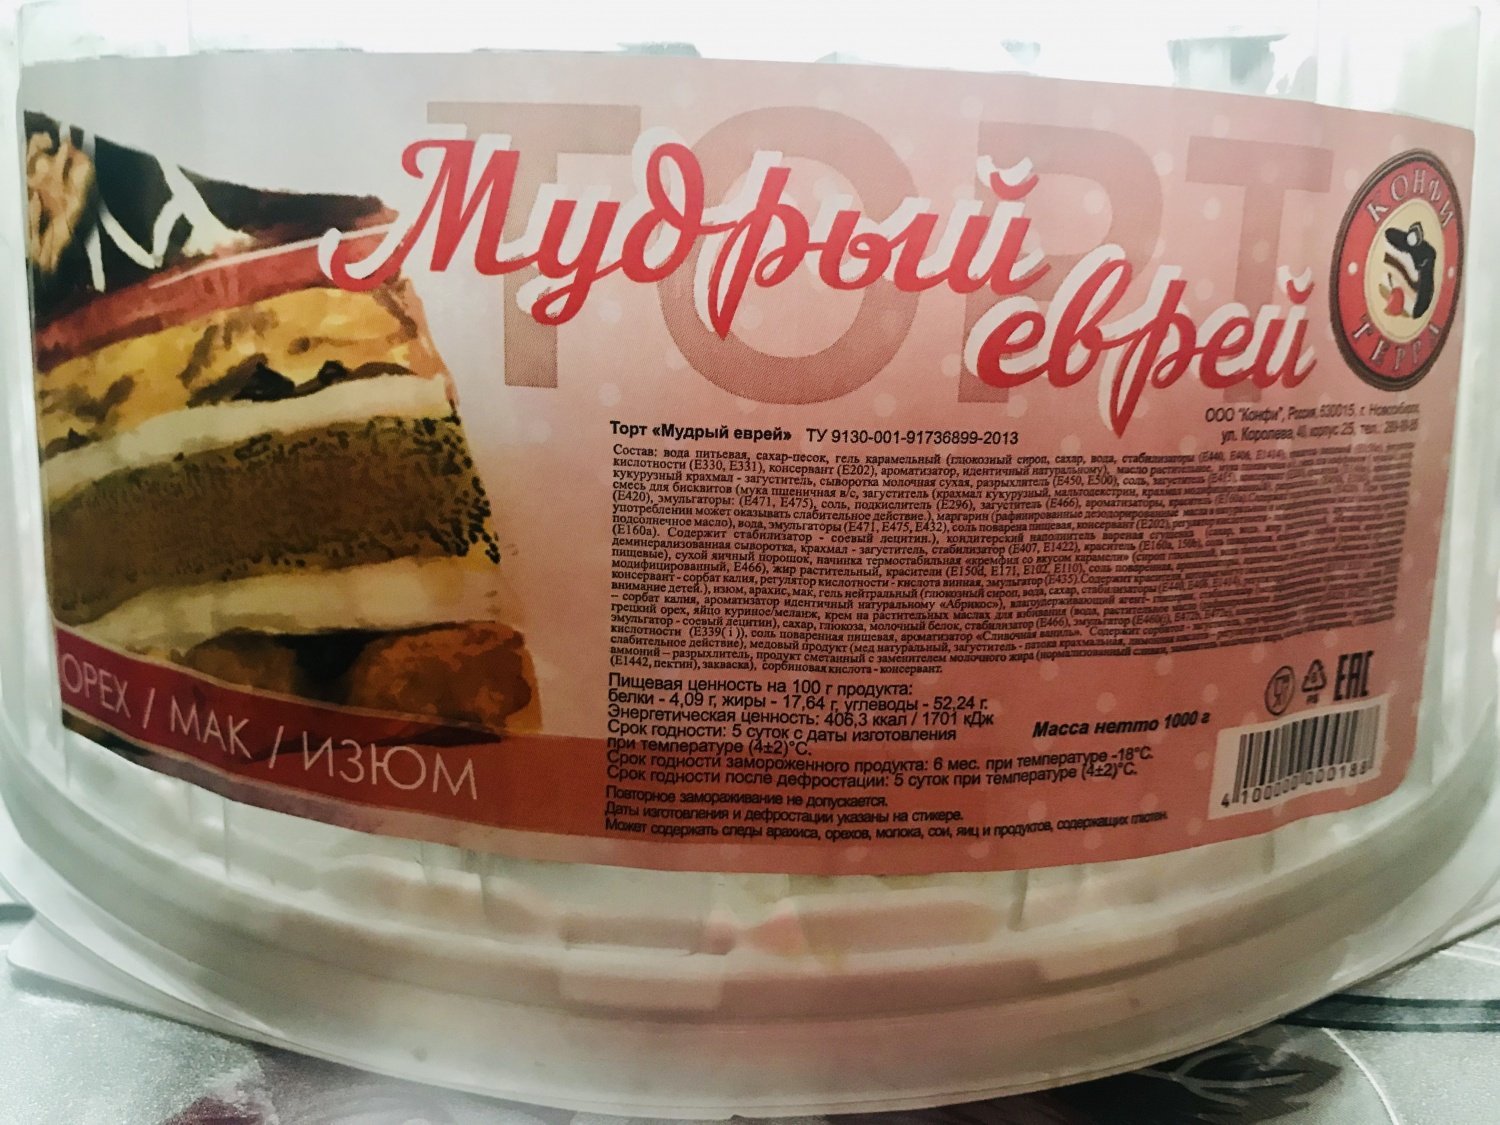 Простой Рецепт торта Бедного еврей пошагово с фото